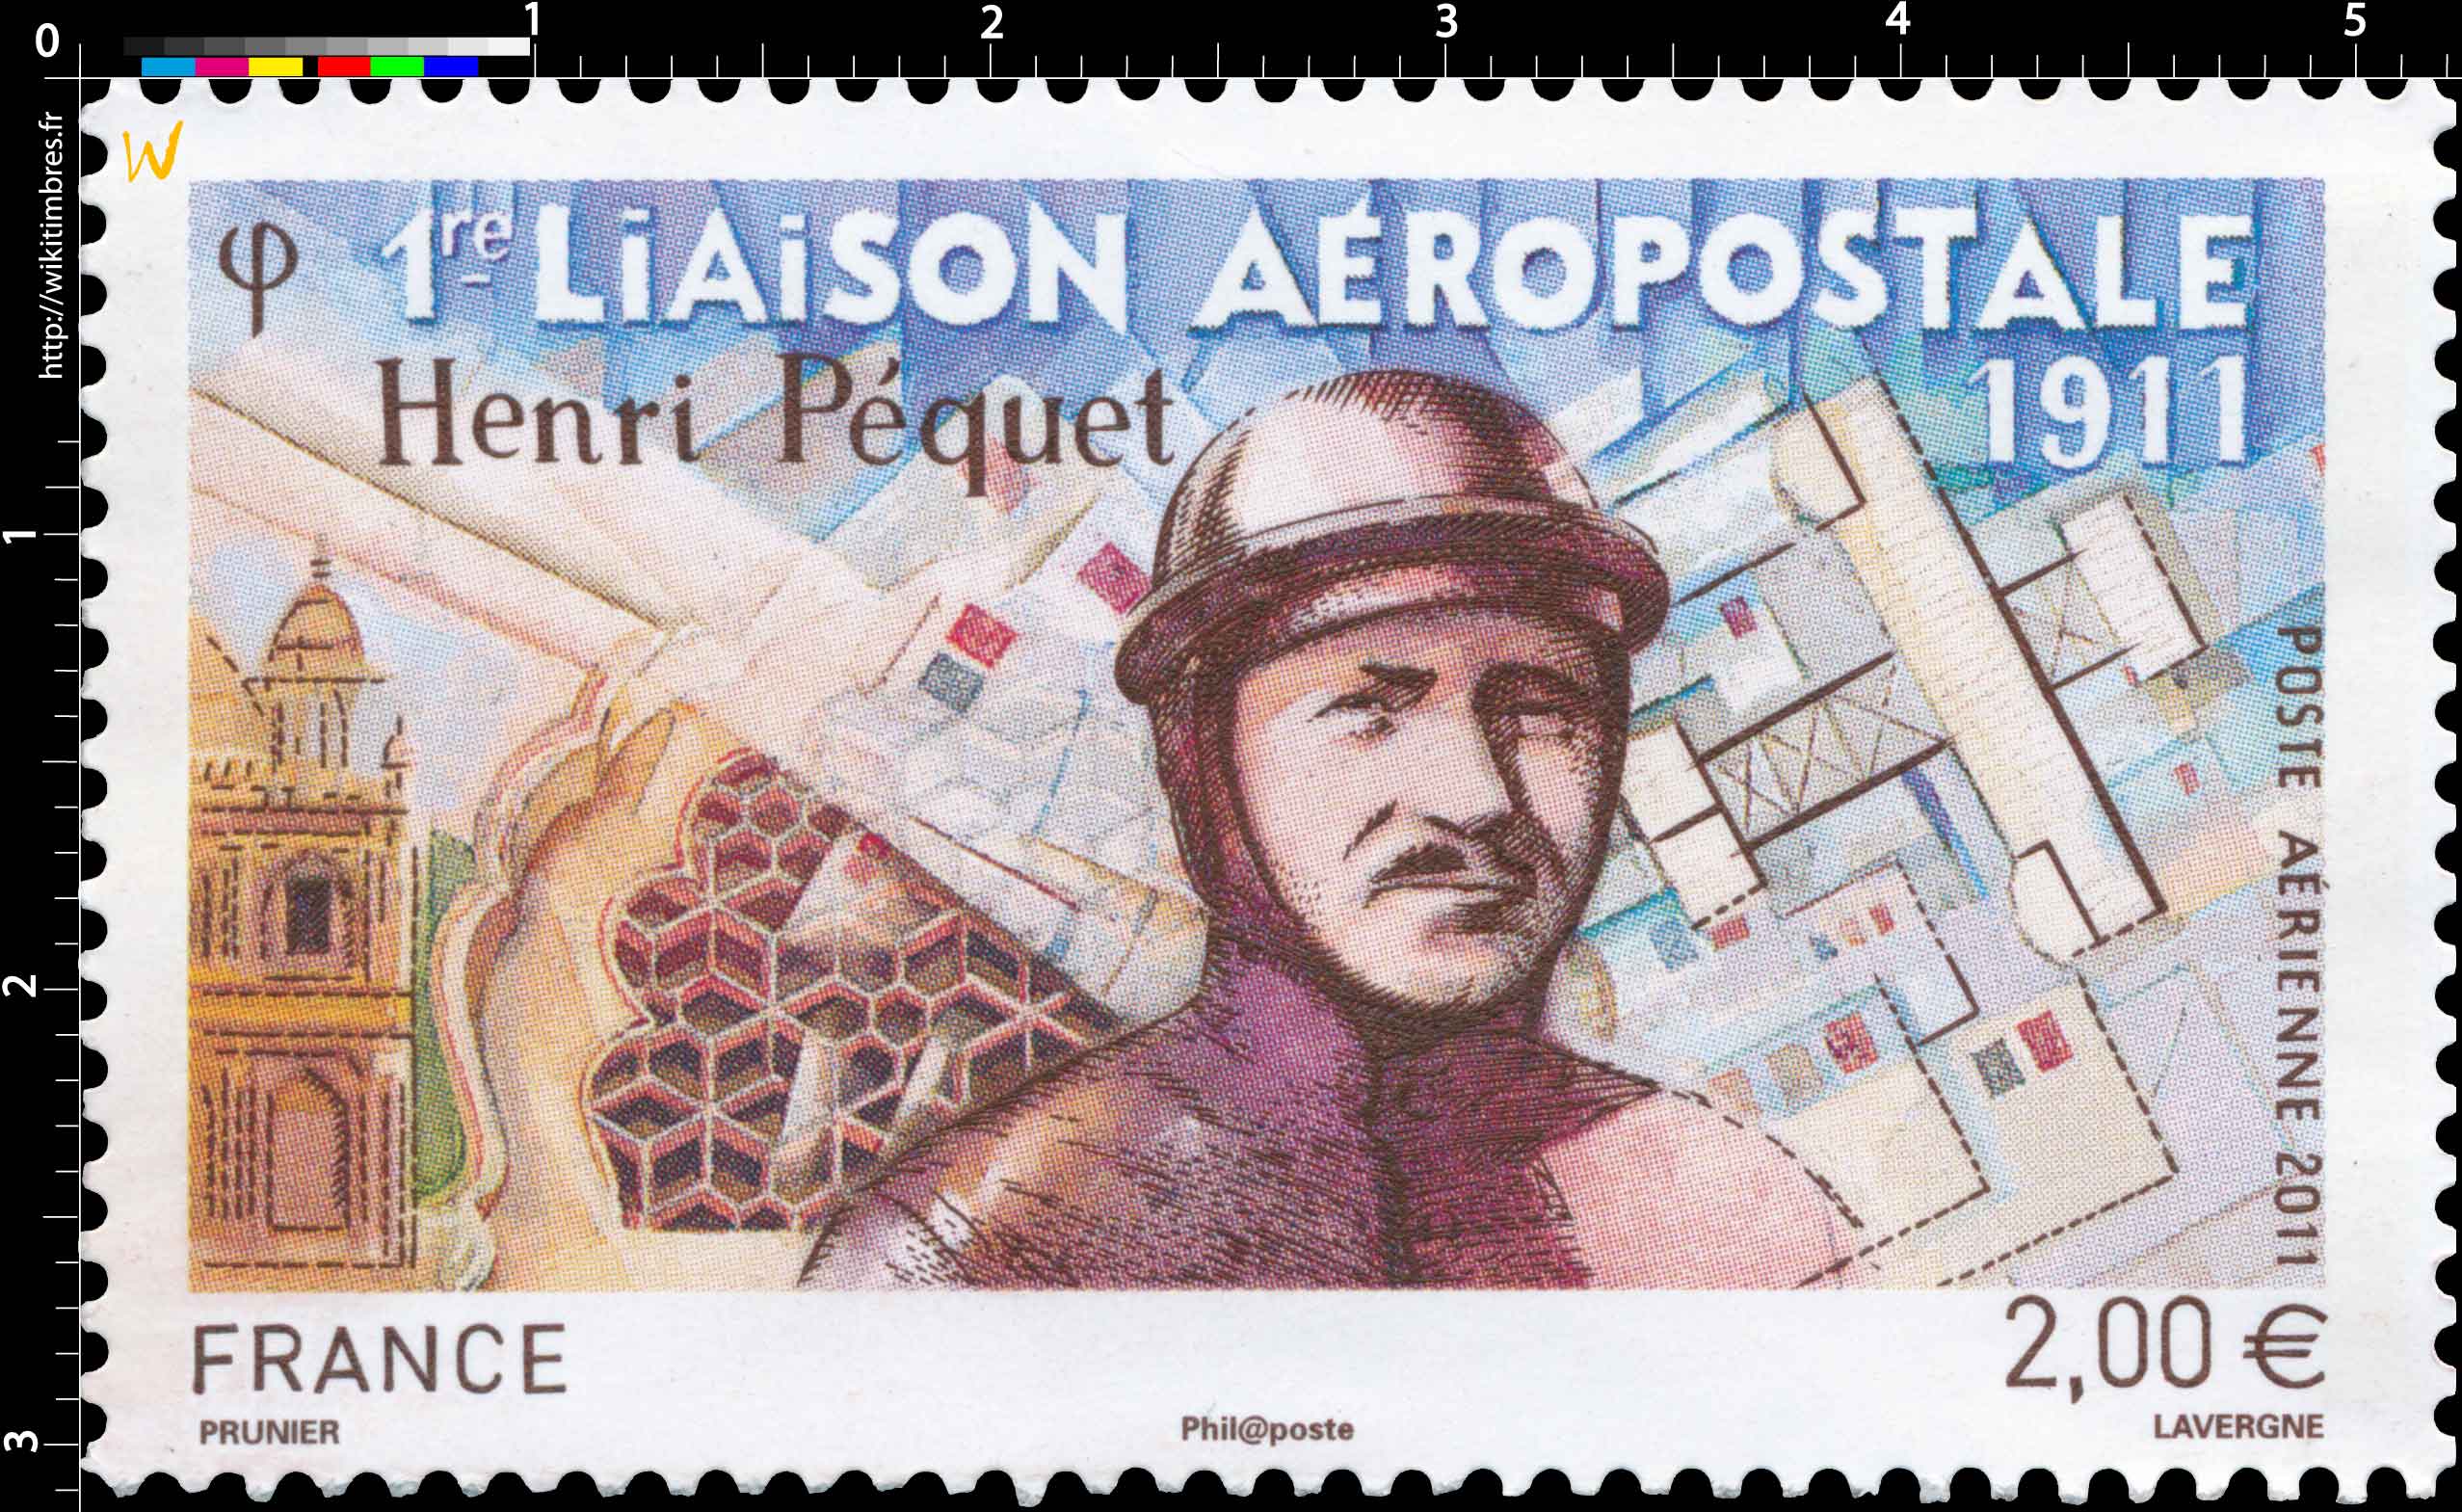 2011 1re liaison aéropostale - Henri Péquet 1911